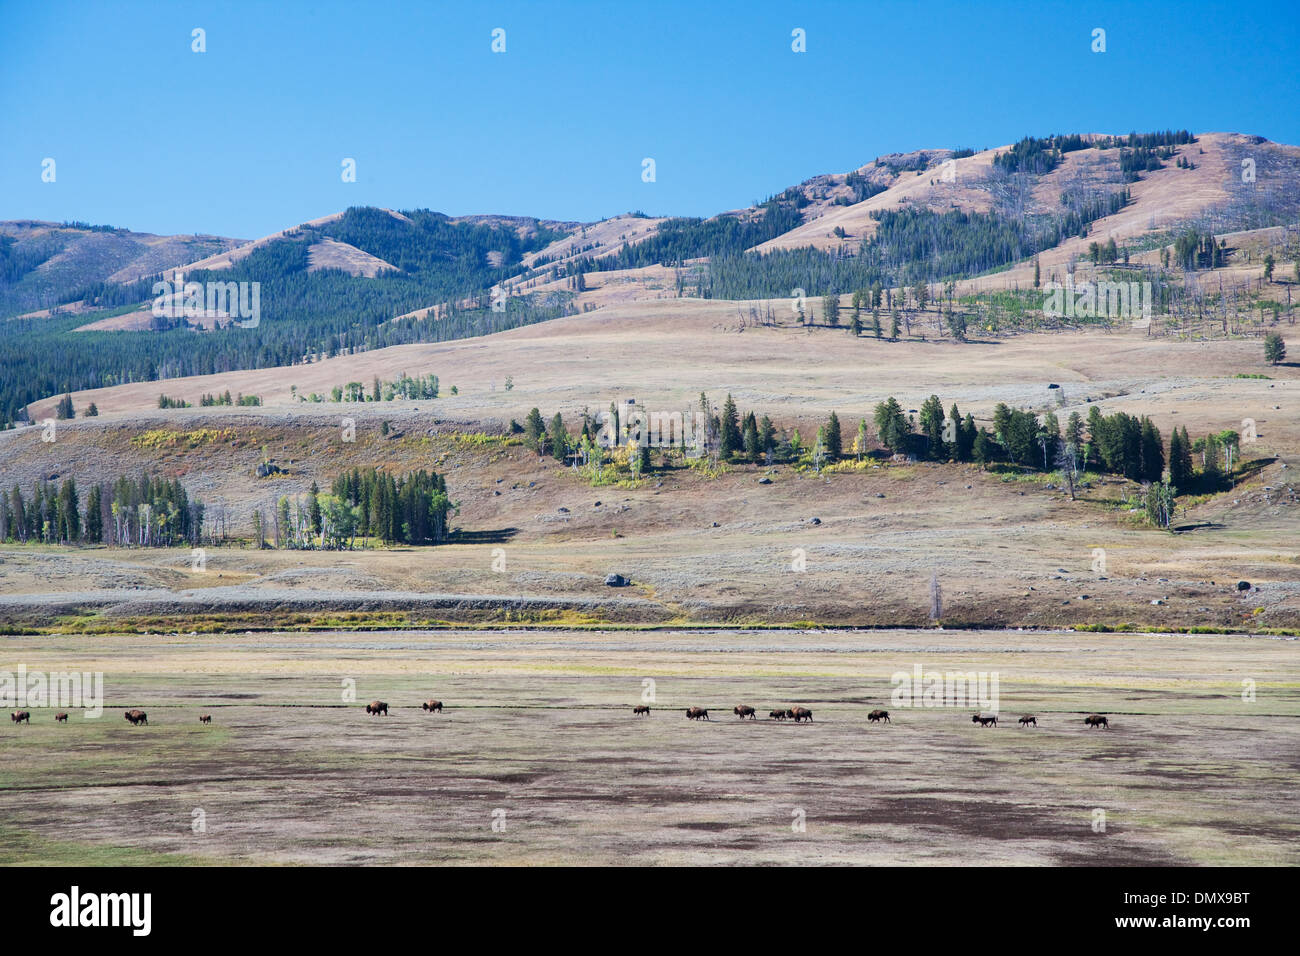 Troupeau de bisons - voyager dans l'Lamar Valley Bison bison Parc National de Yellowstone au Wyoming. USA MA002826 Banque D'Images